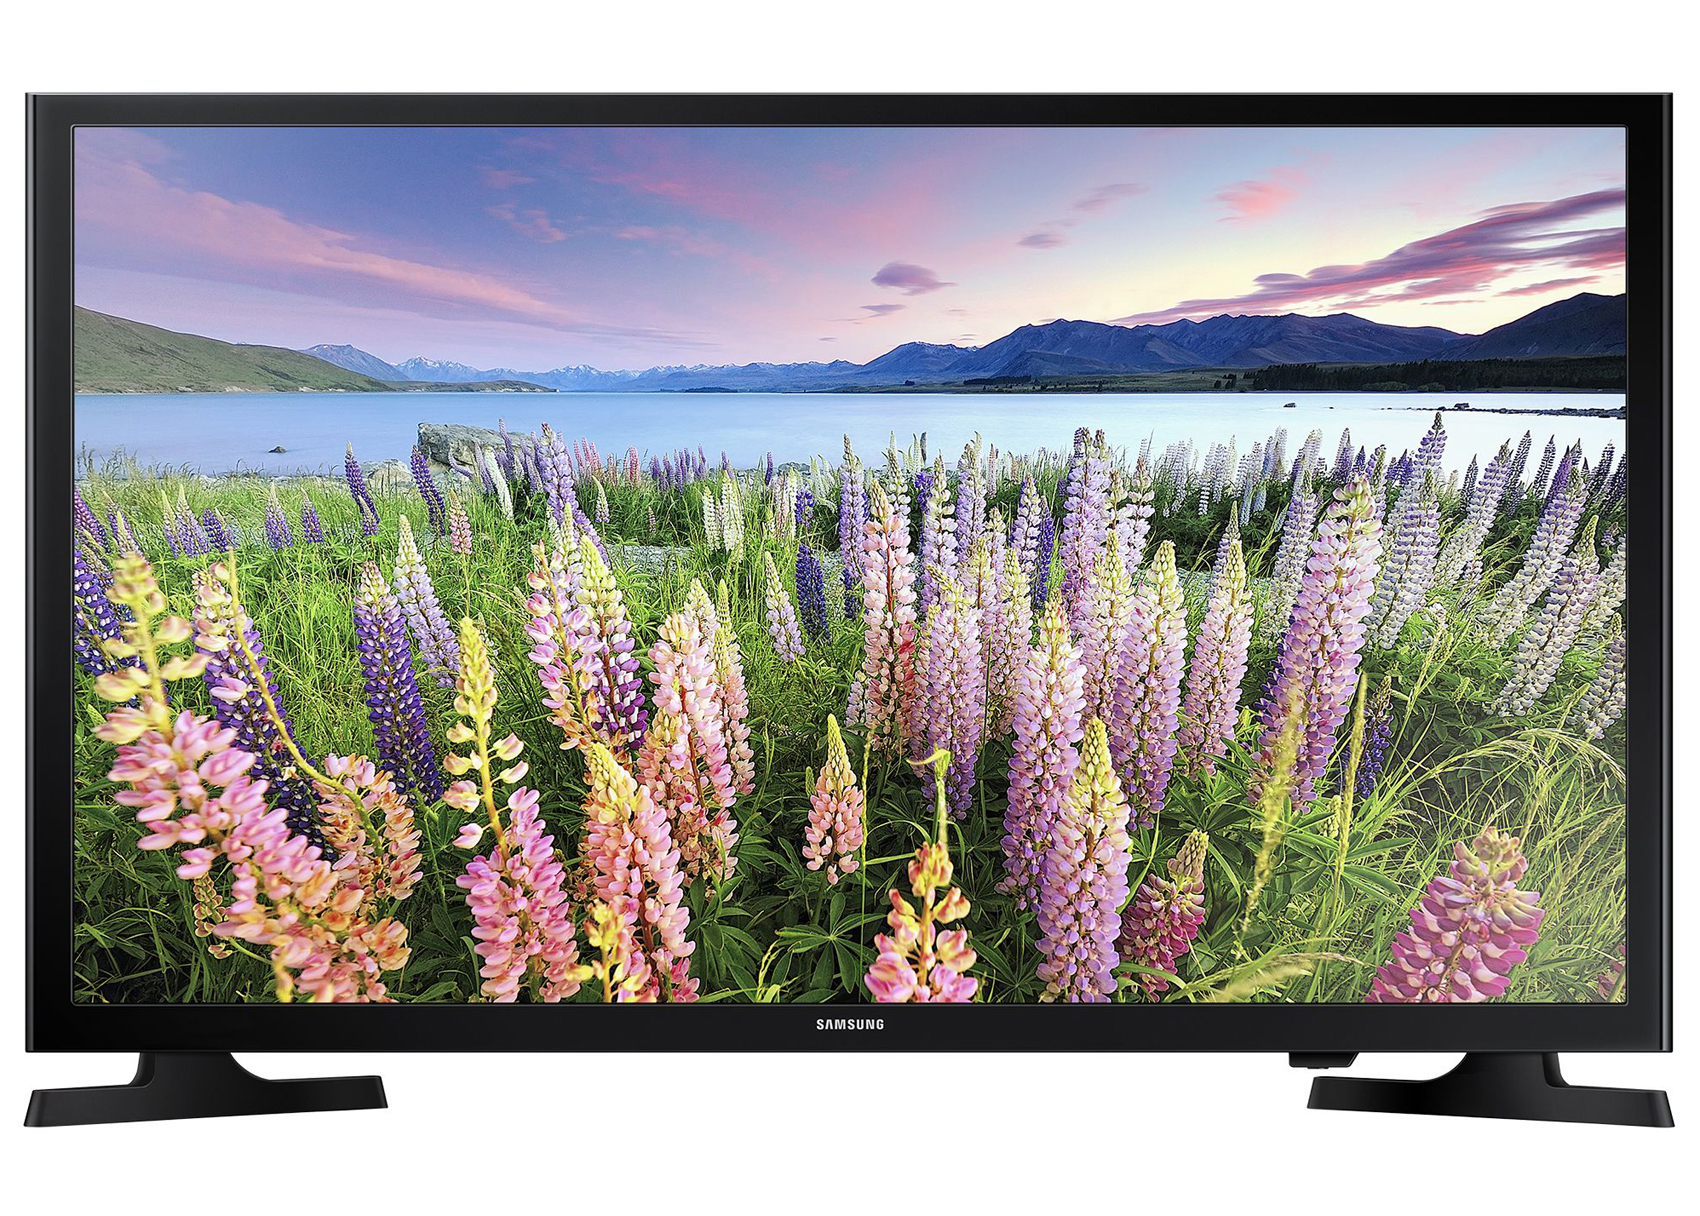 Телевизор LED Smart Samsung, 48" (121 cм), 48J5200, Full HD